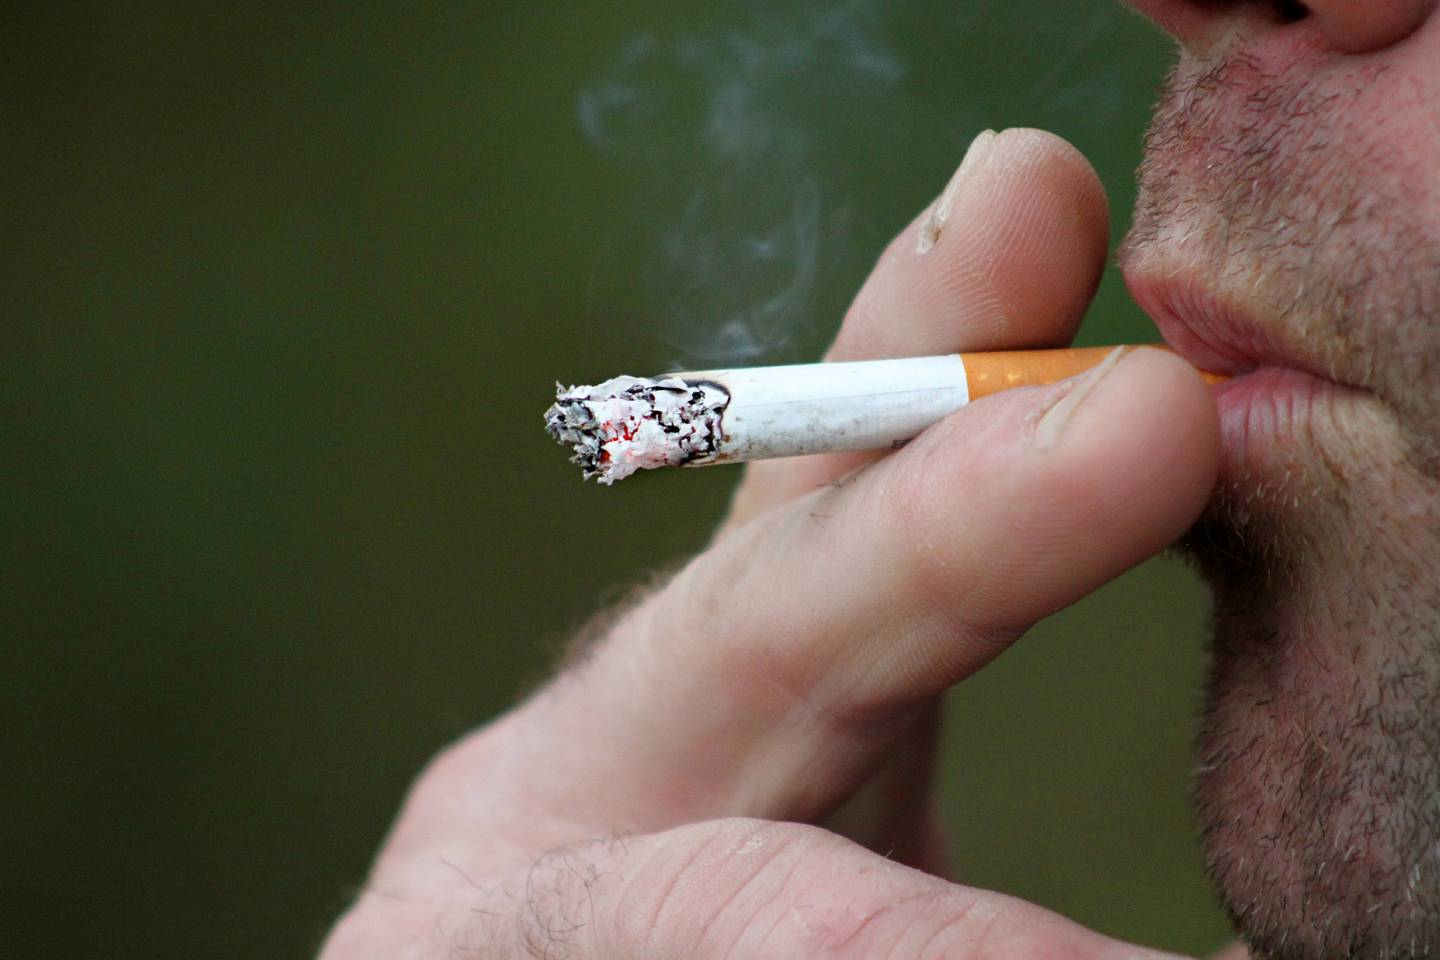 Se calcula que el tabaco mata actualmente a más de ocho millones de personas por año, incluyendo 1,3 millones de no fumadores que están expuestos al humo de segunda mano, según la OMS.